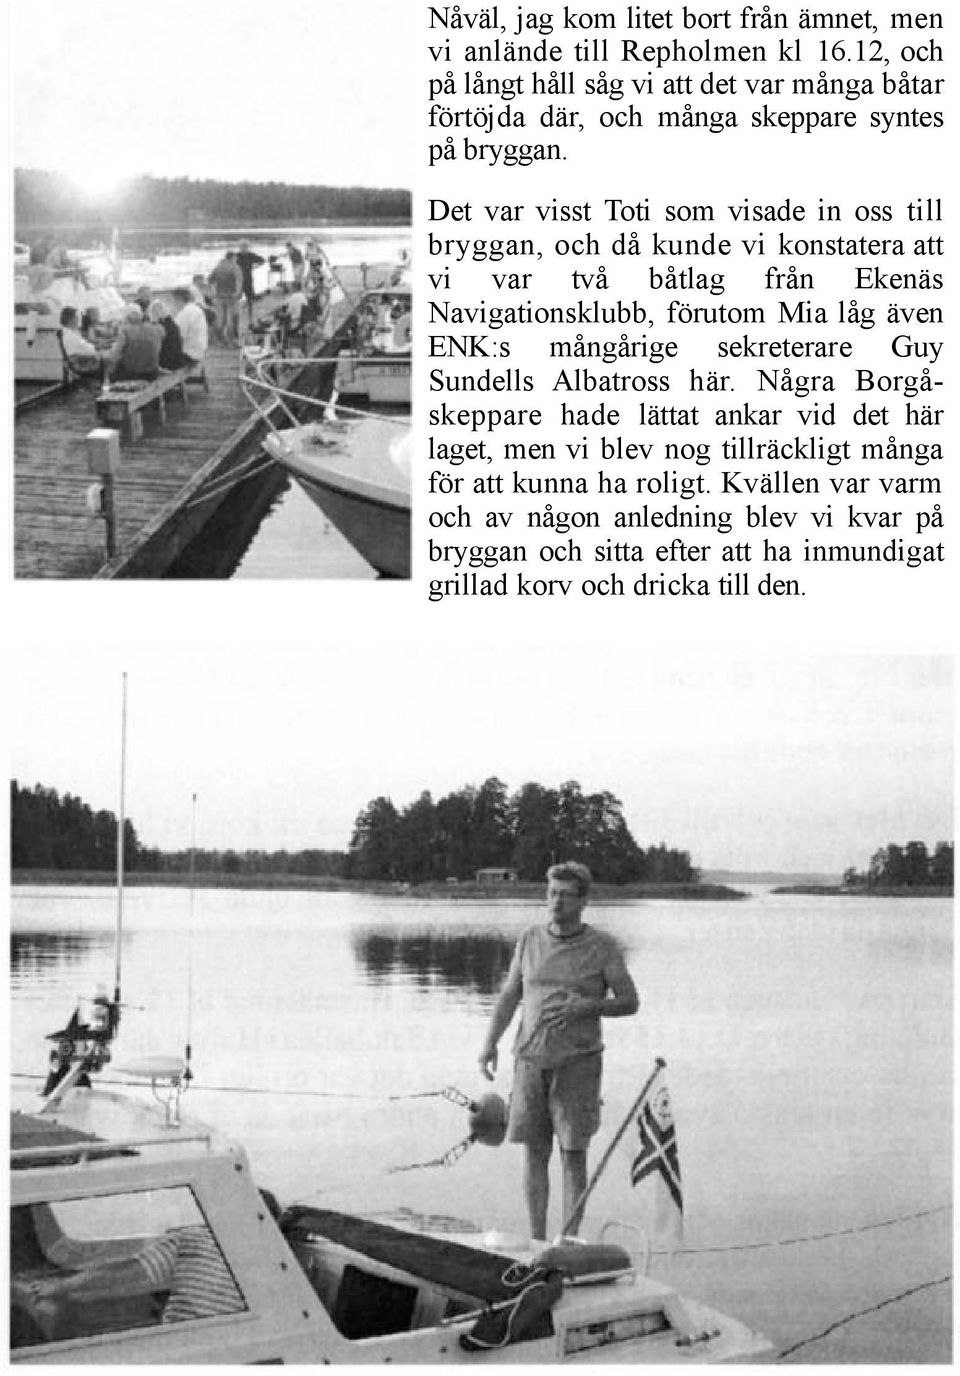 Det var visst Toti som visade in oss till bryggan, och då kunde vi konstatera att vi var två båtlag från Ekenäs Navigationsklubb, förutom Mia låg även ENK:s